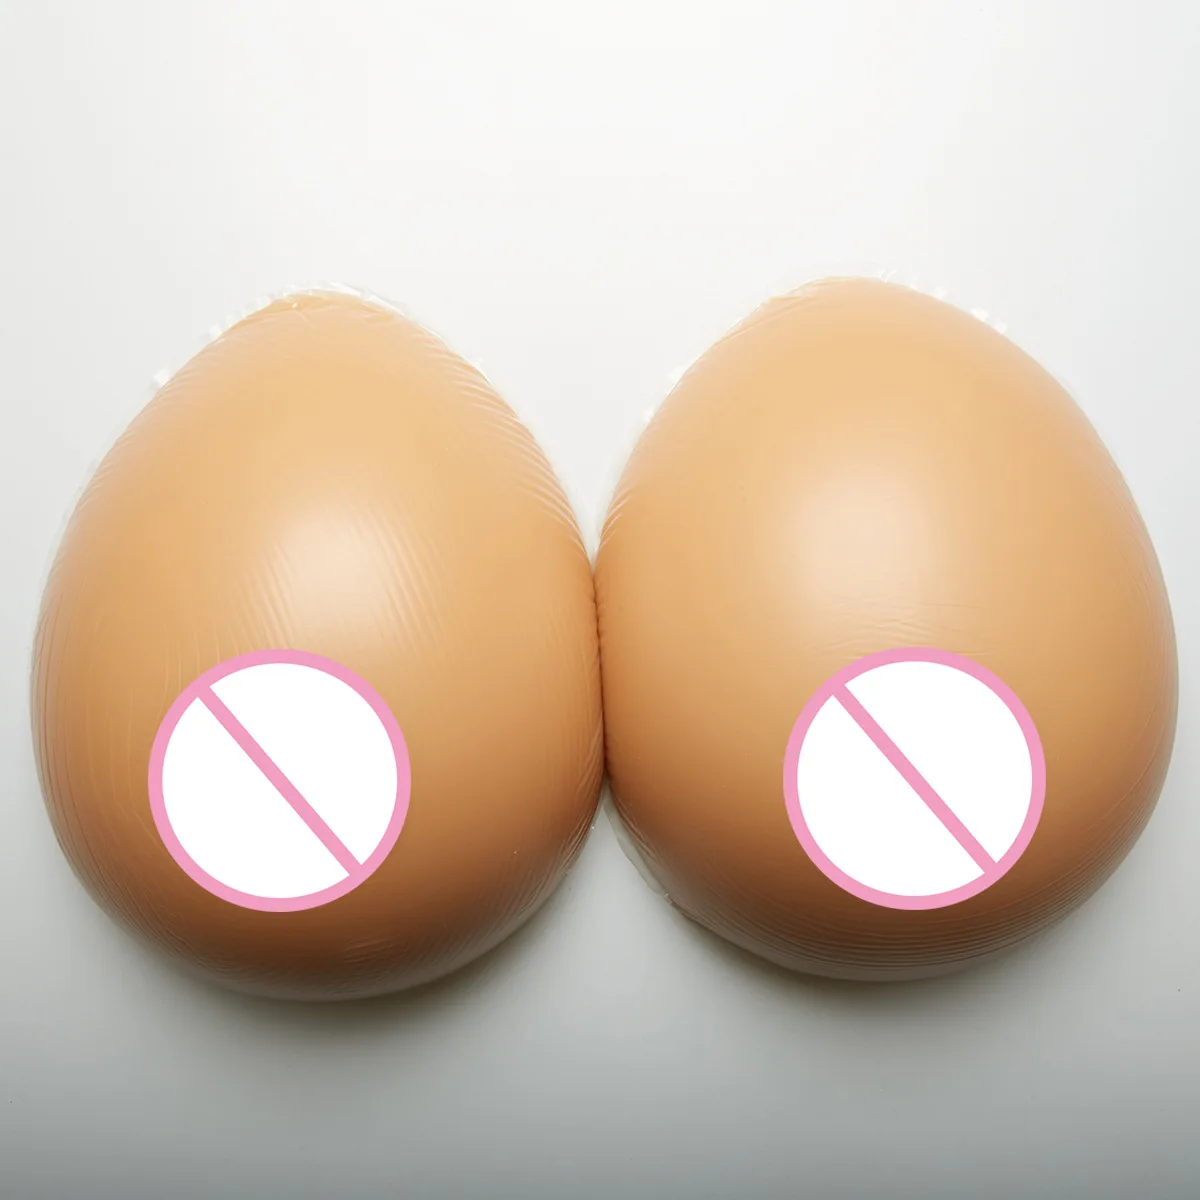 Новинка 2019 года имитация грудь, Силиконовая грудь формы поддельные груди для трансвестита послеоперационный перетащите queen Трансвестит